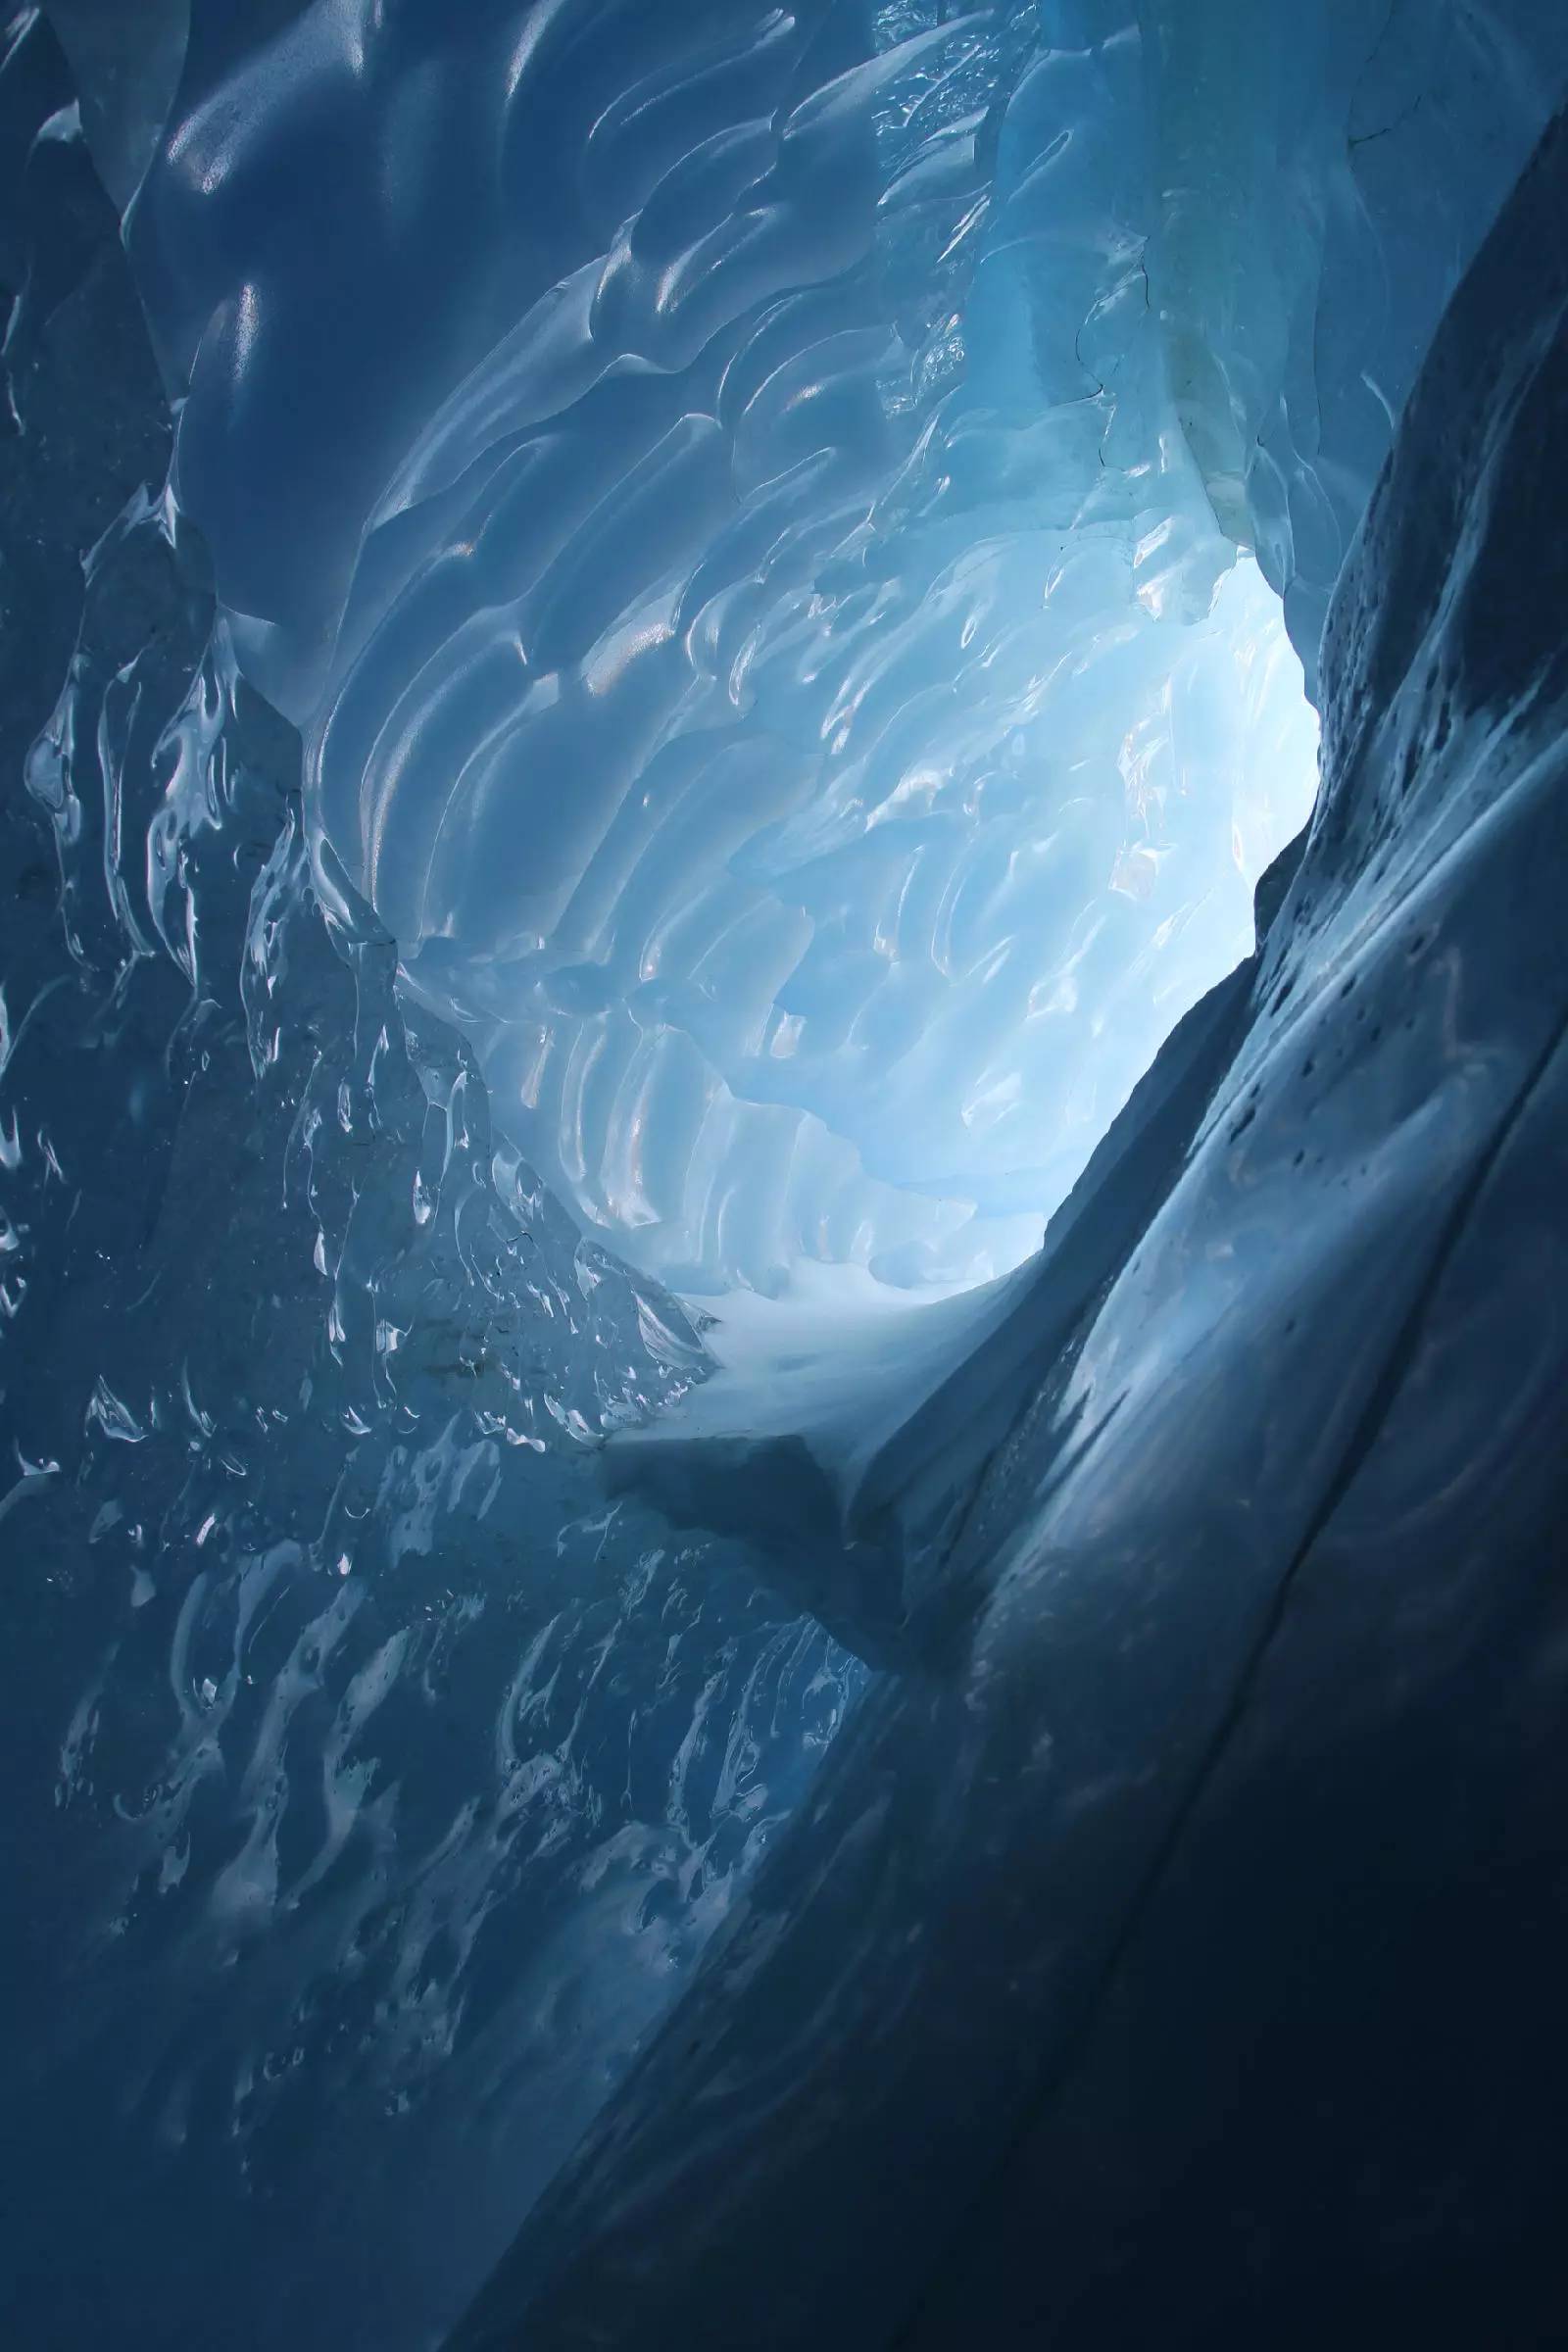 南极大陆冰溶洞探险视频首次公布-第一人称视角